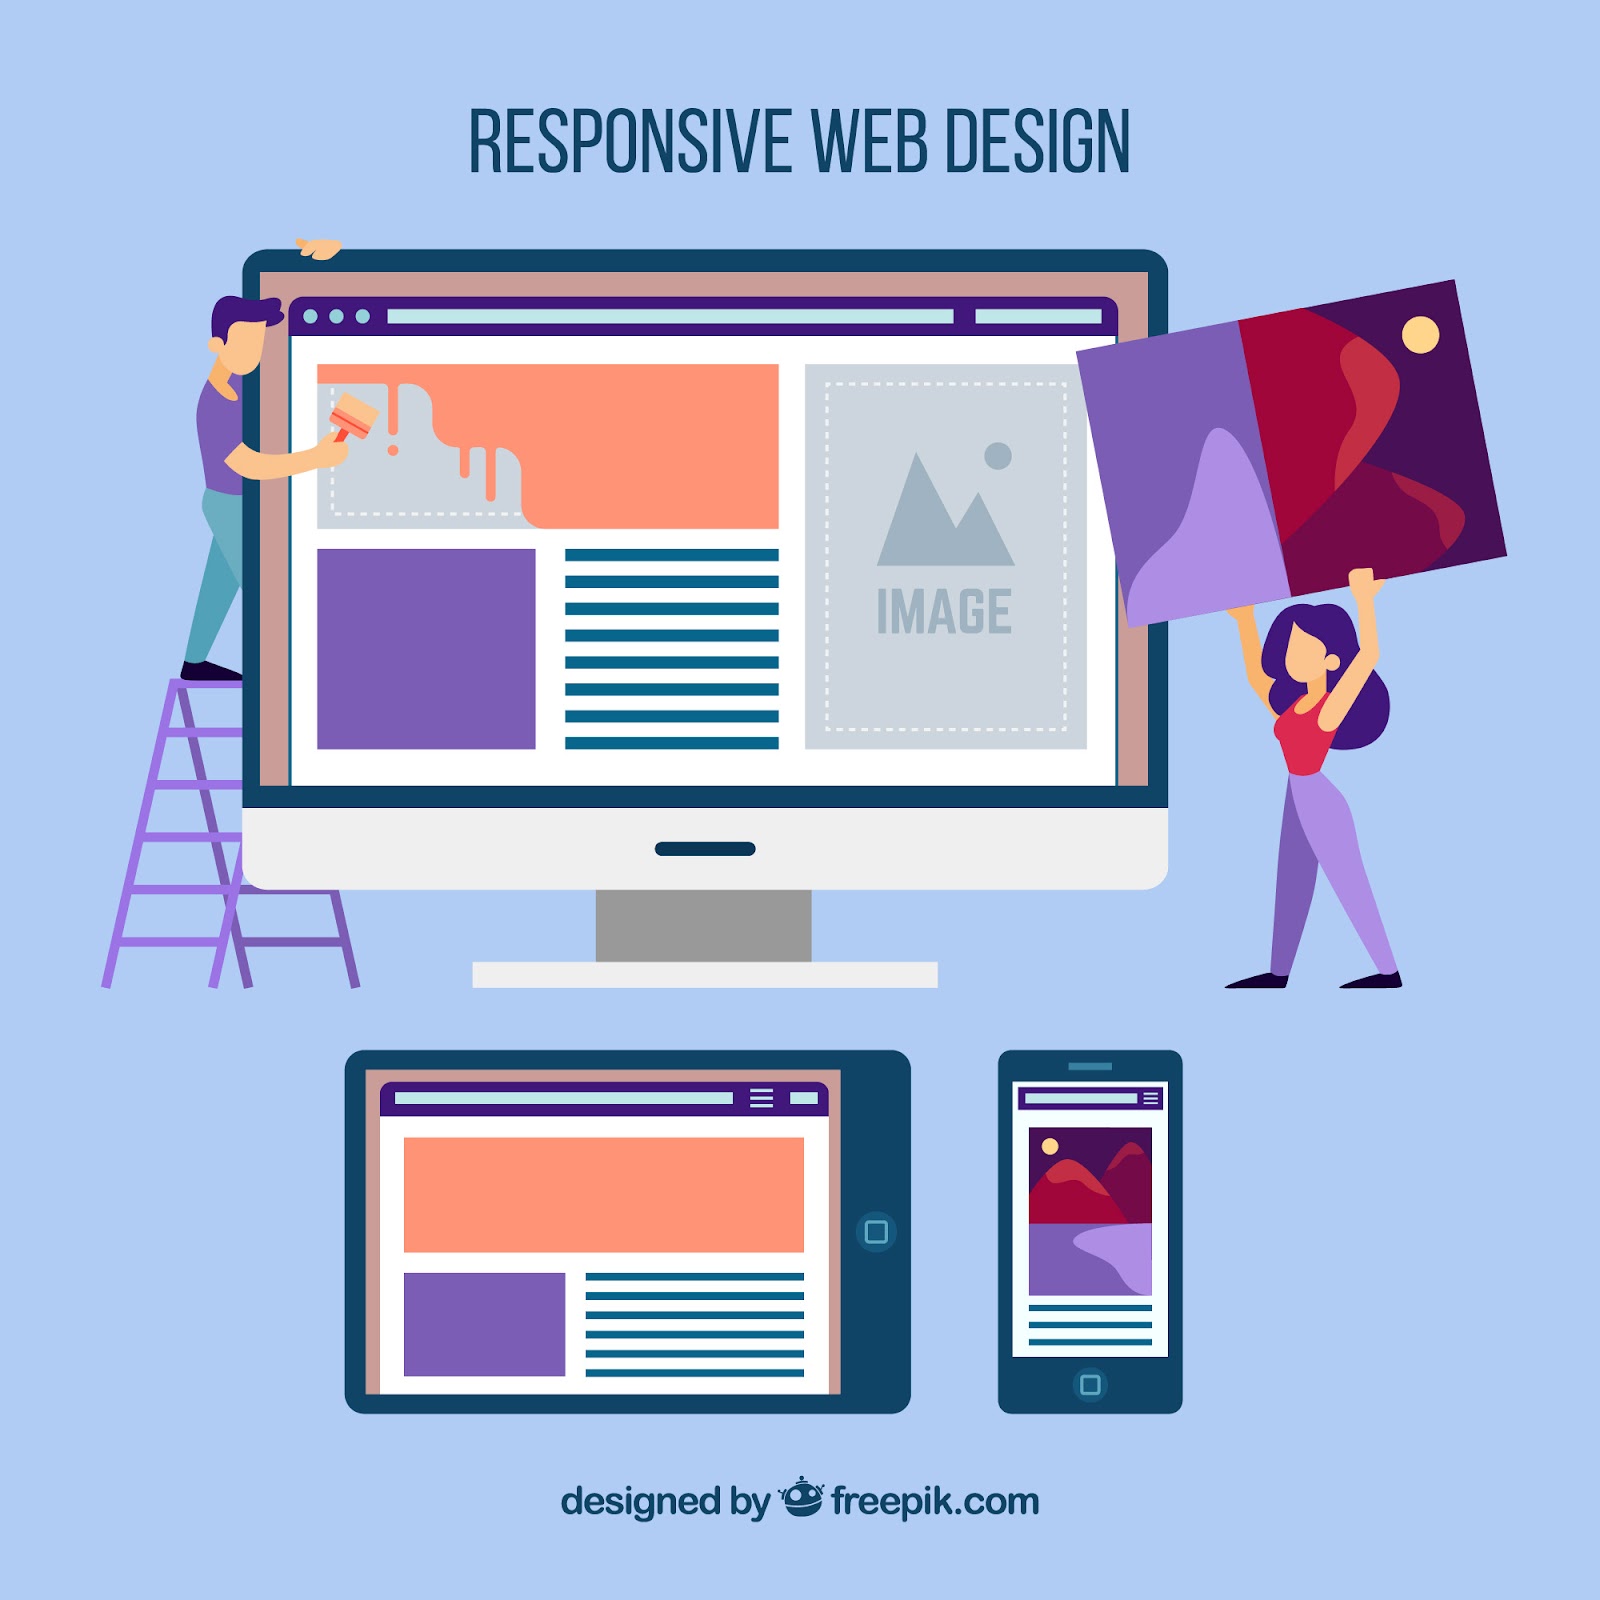 A web design about responsive web design